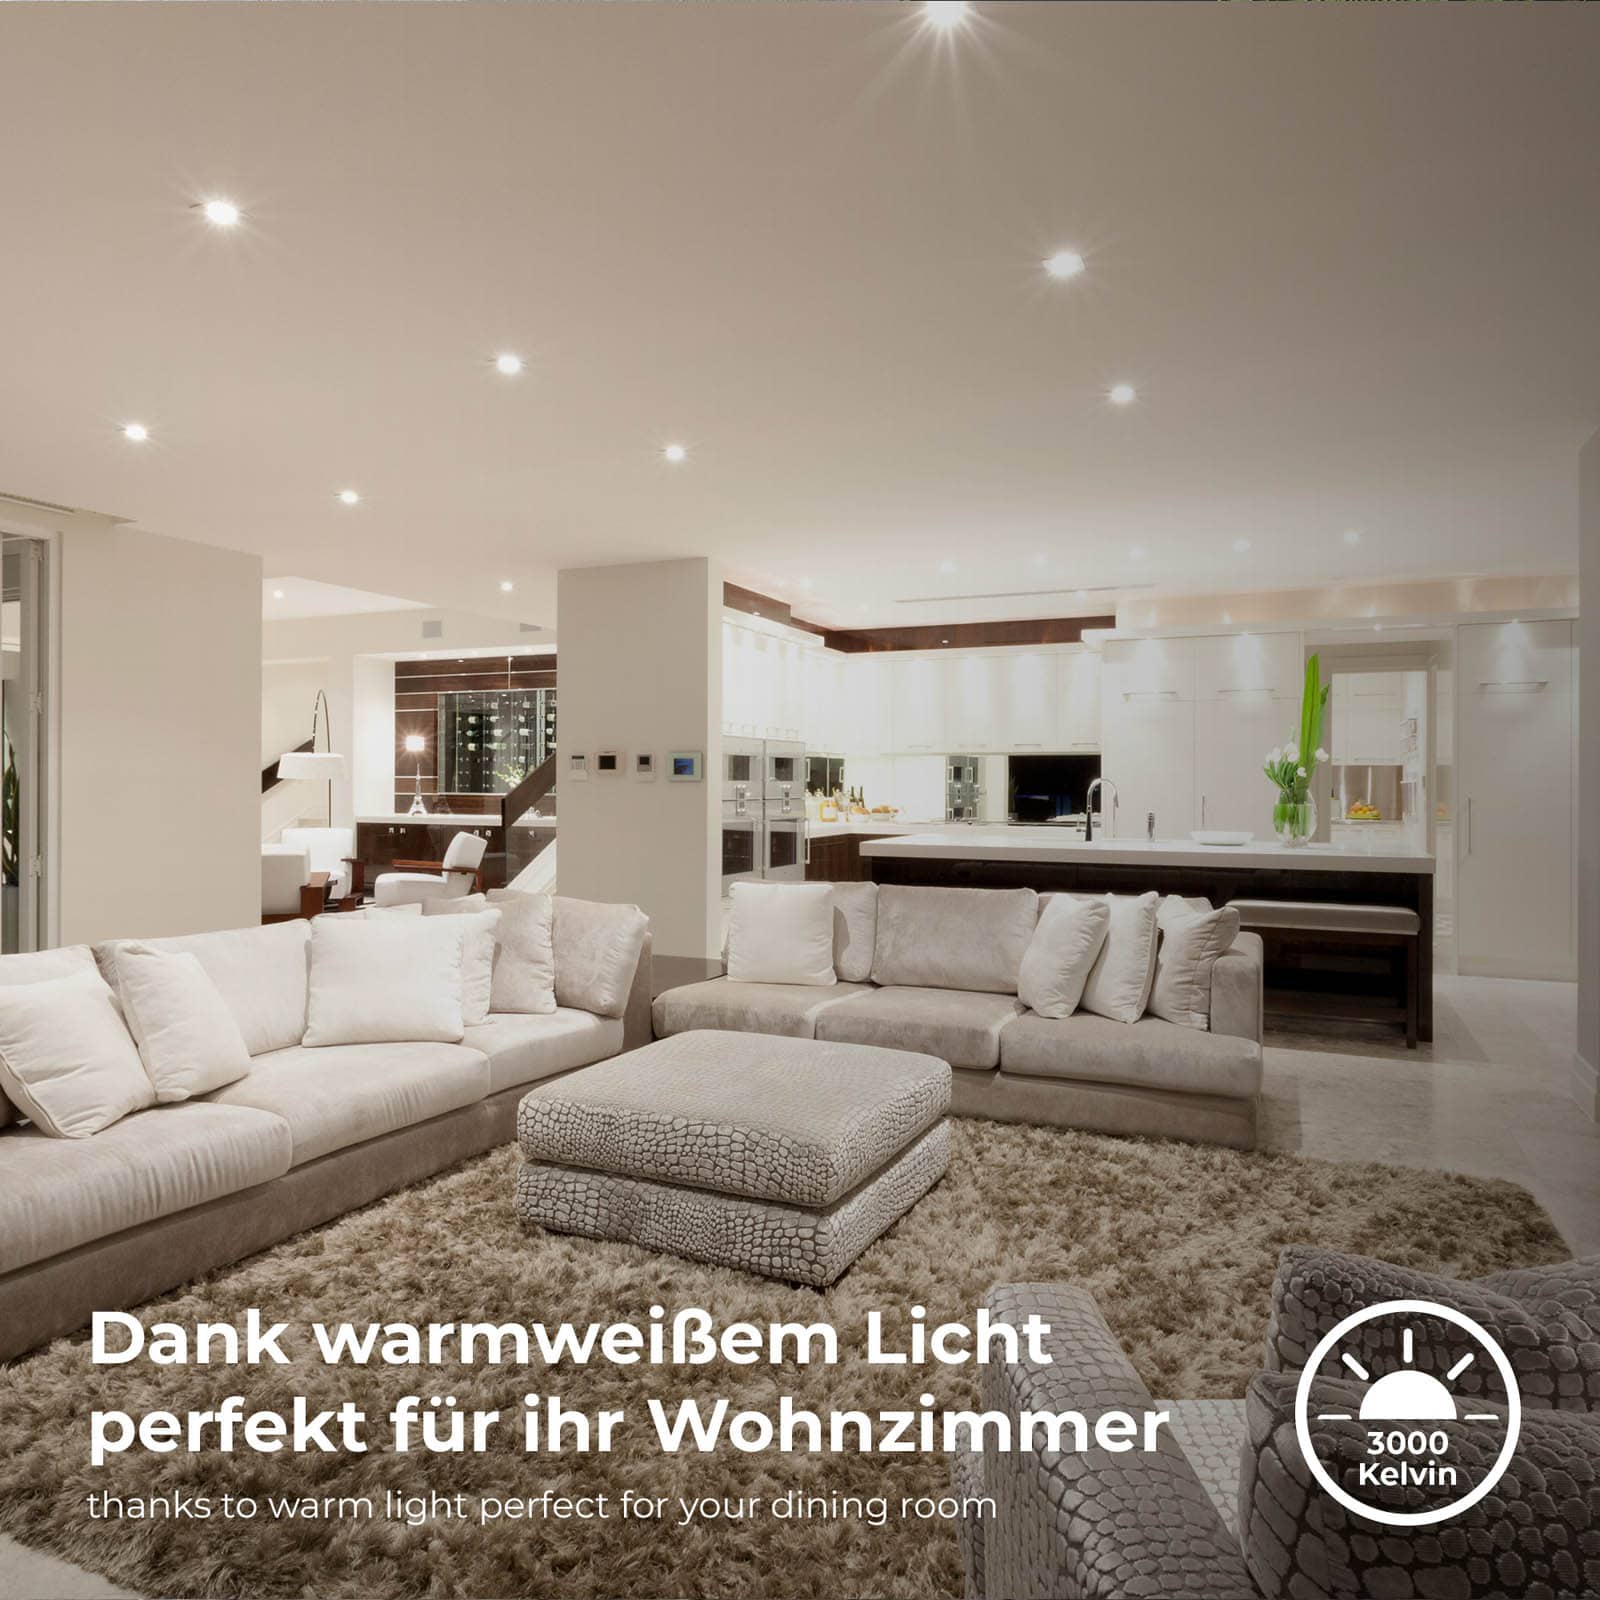 LED Einbaustrahler wasserfest Ø90mm - 6er SET - LED Einbauleuchten schwenkbar Badezimmer IP65 230V 5W 480lm warmweiße Lichtfarbe | Chrom-matt - 4